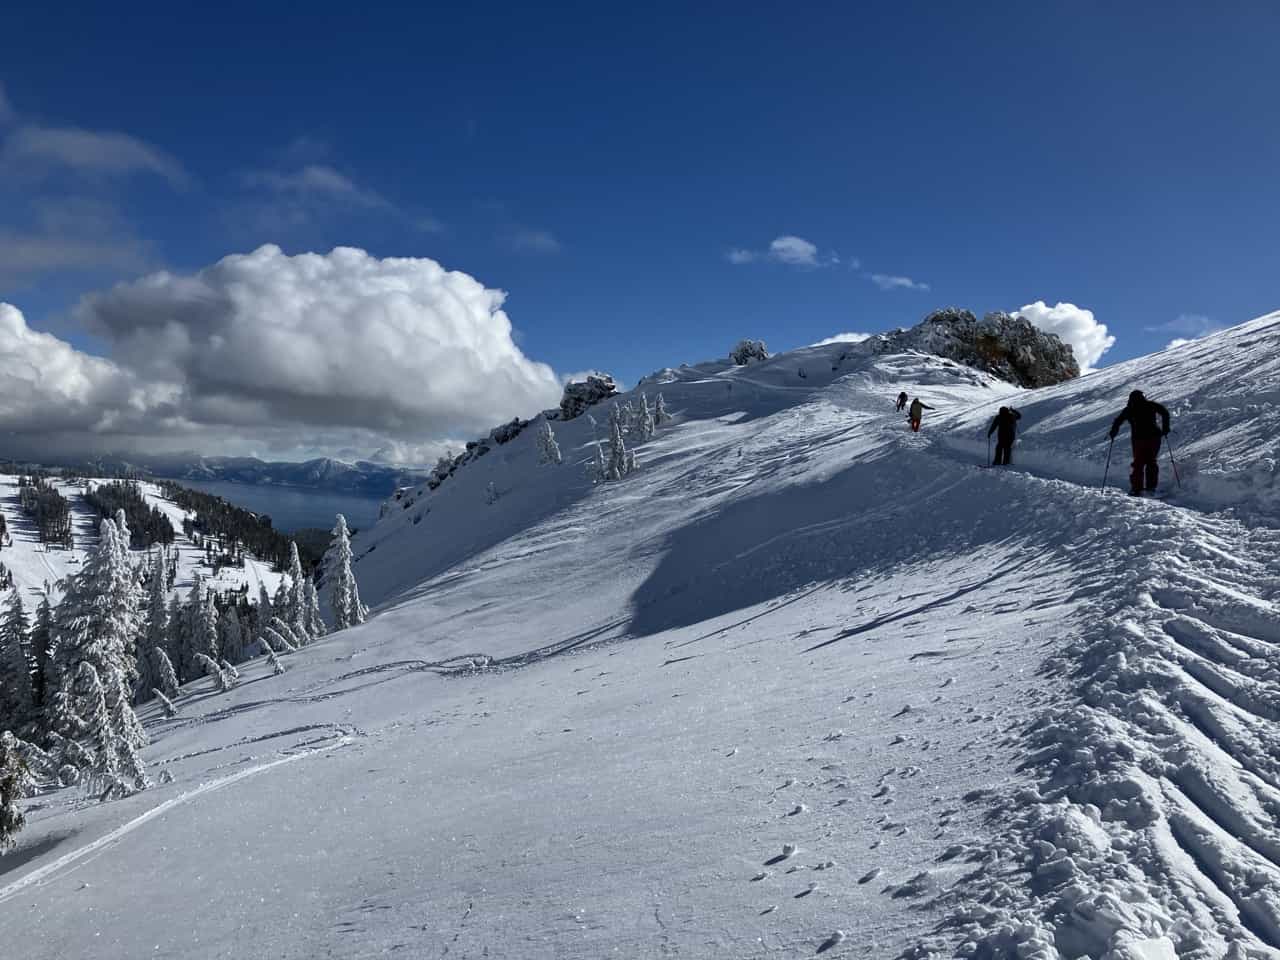 skiers traversing across top of snowy slope